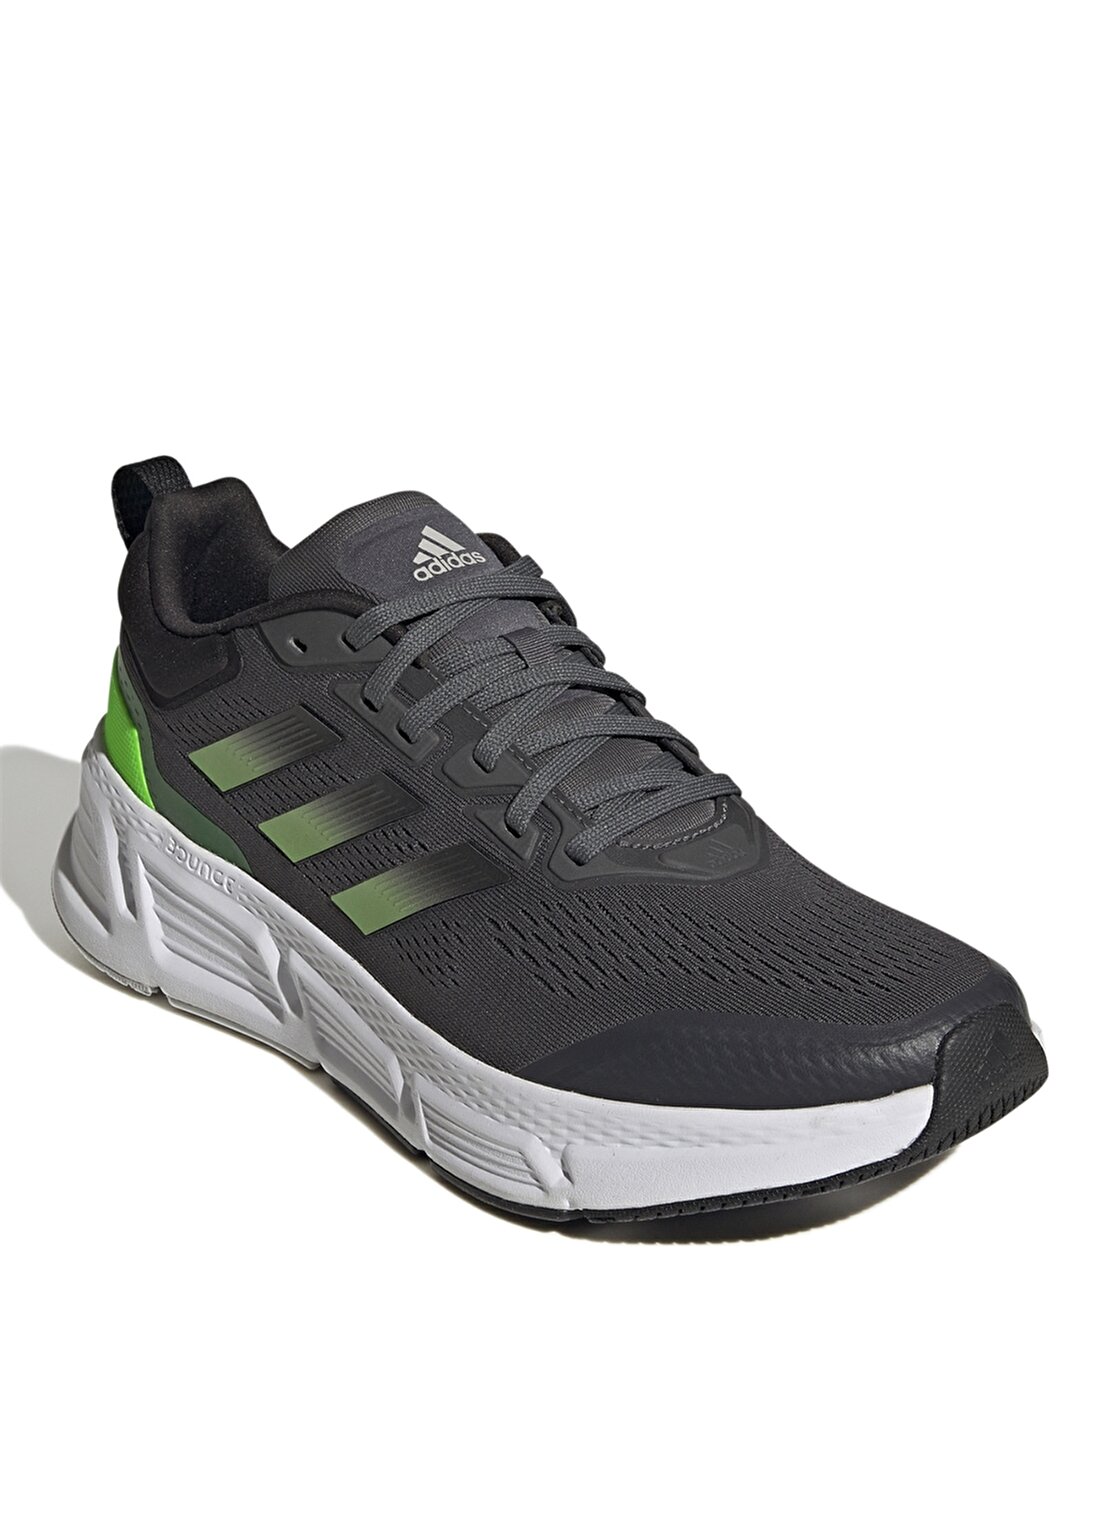 Adidas Gri - Yeşil Erkek Koşu Ayakkabısı GY2262 QUESTAR TD